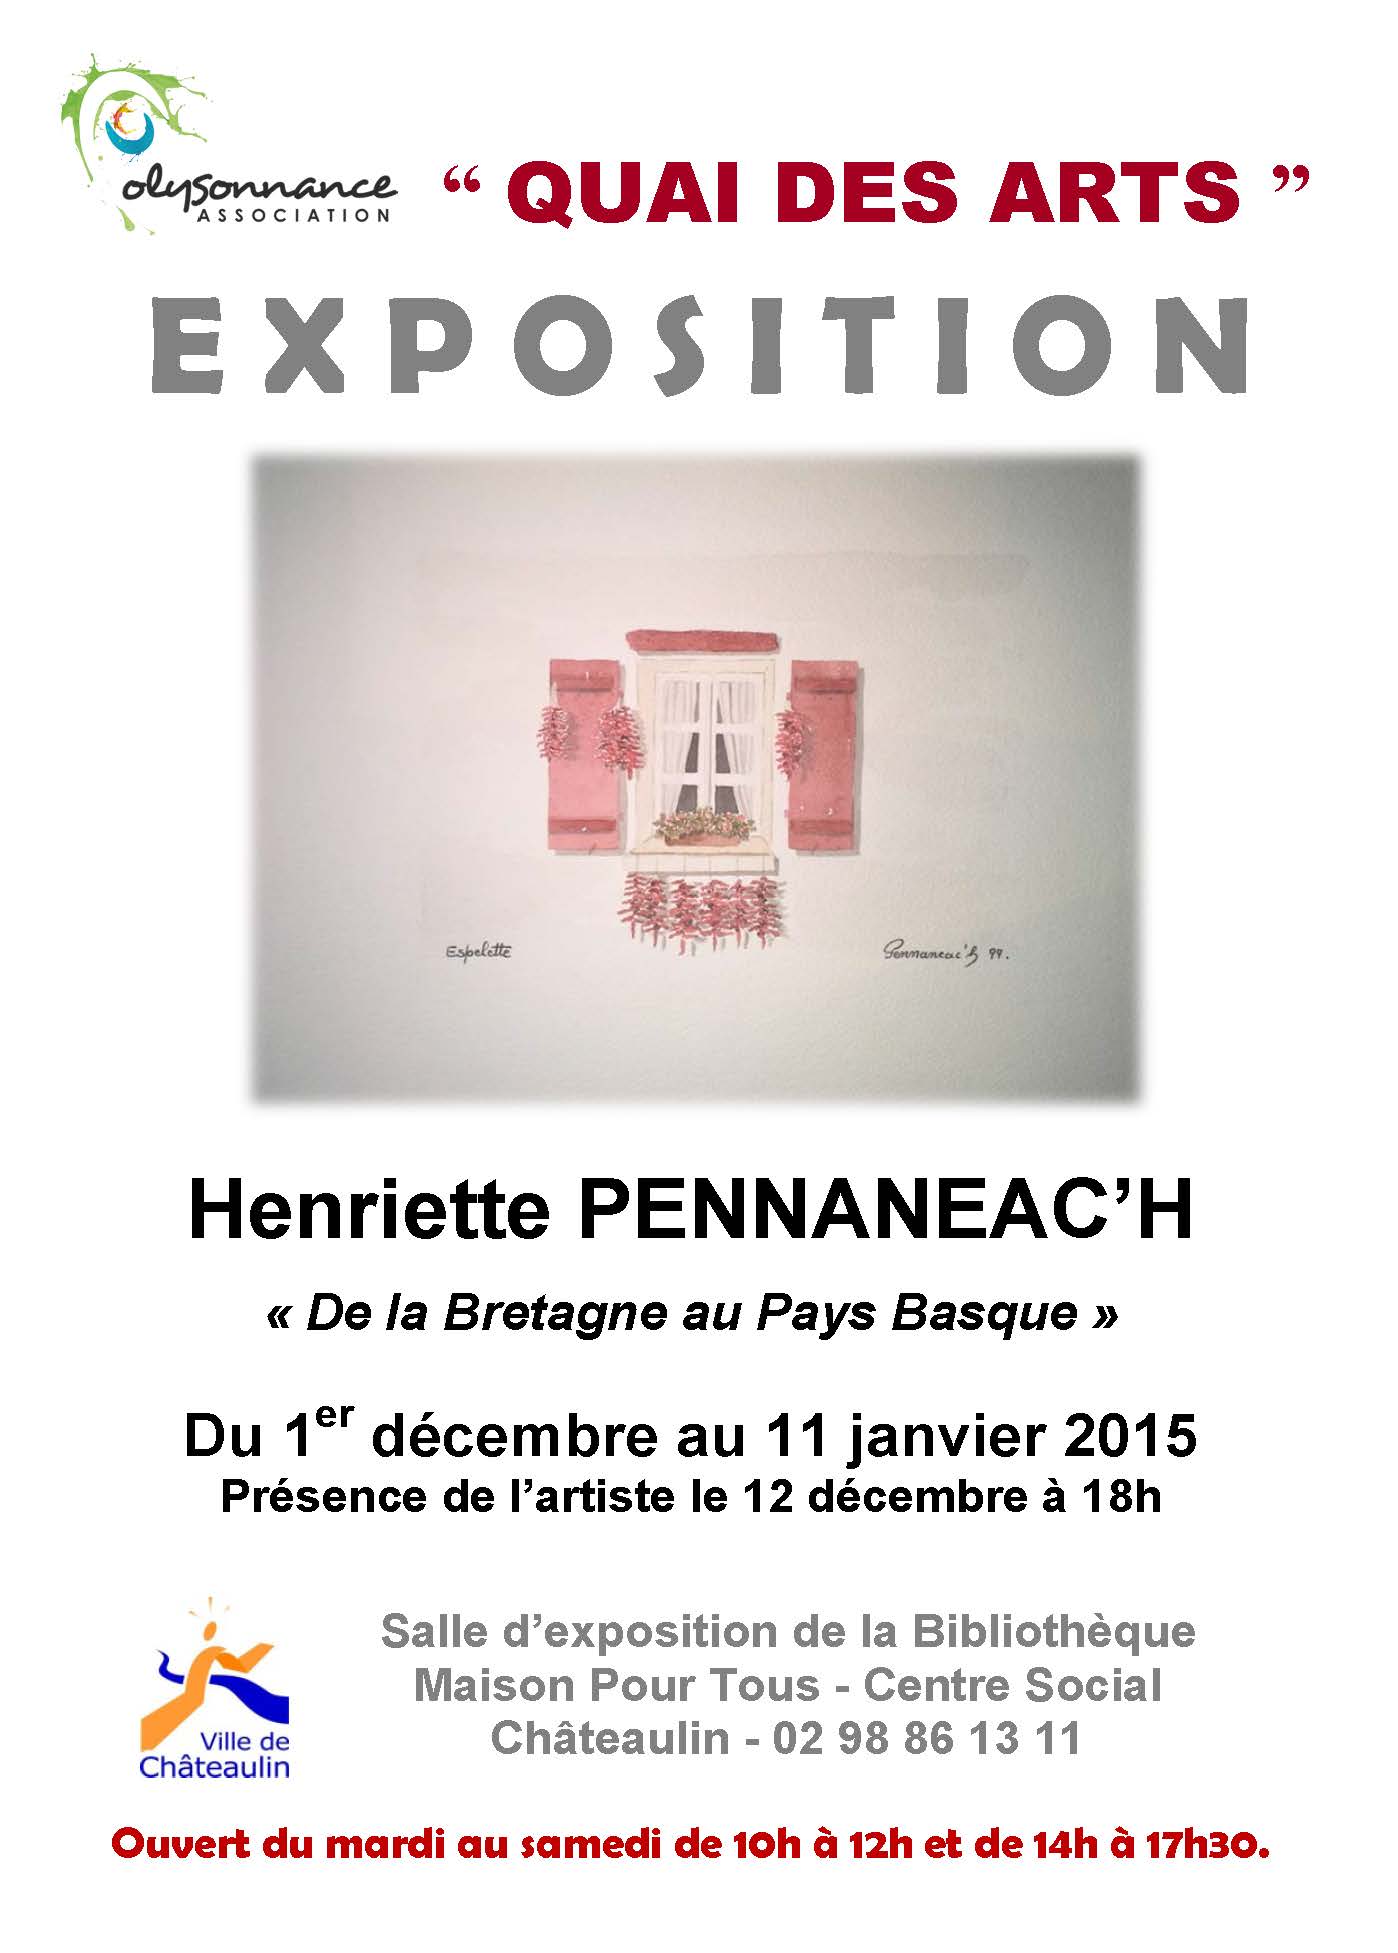 QUAI DES ARTS : EXPOSITION  D’HENRIETTE PENNANEAC’H DU 1ER DECEMBRE AU 11 JANVIER 2015